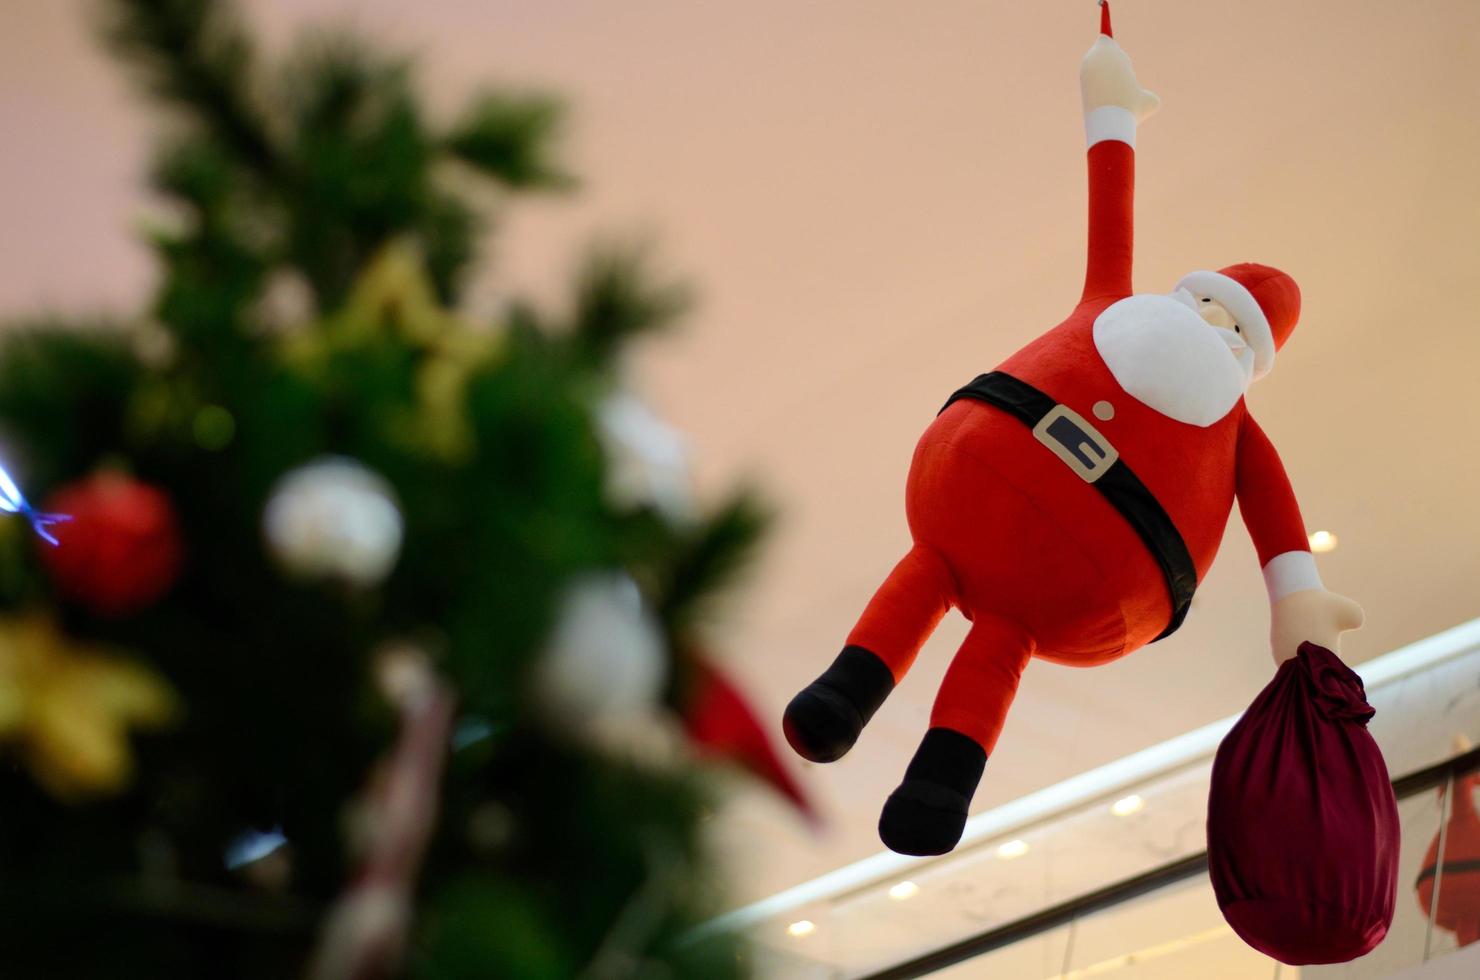 la gran muñeca de santa claus con bolsa roja decorada para las vacaciones de navidad. foto